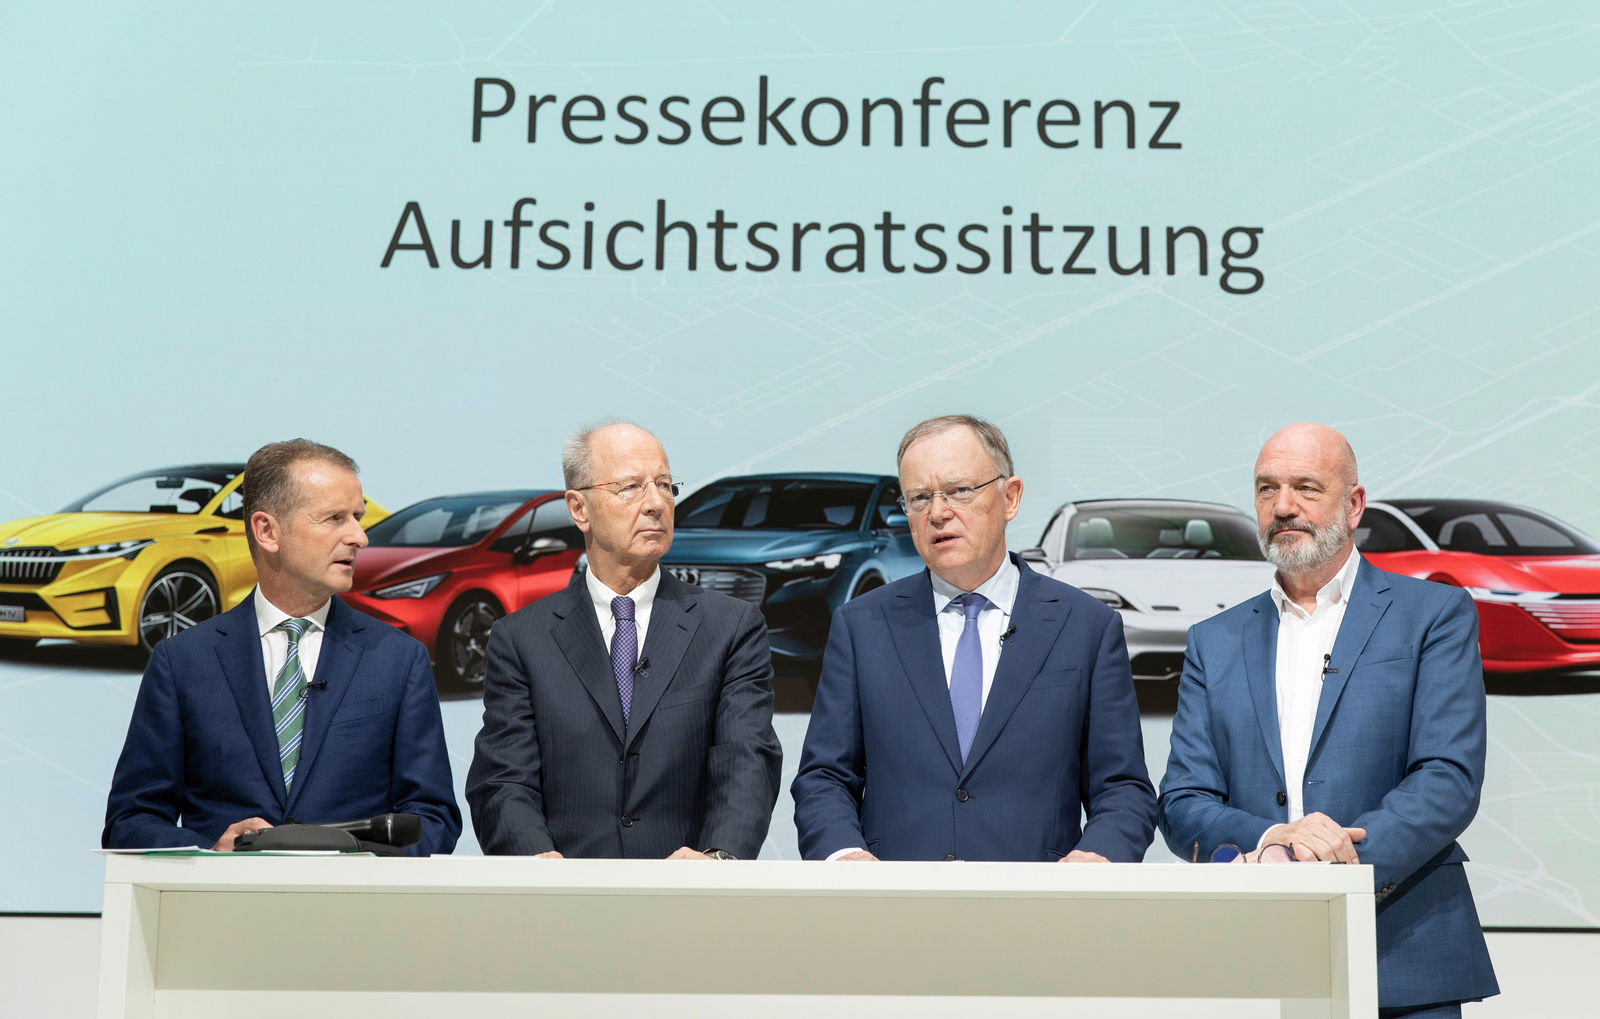 Pressegespräch im Anschluss an die Aufsichtsratssitzung der Volkswagen AG am 15. November 2019